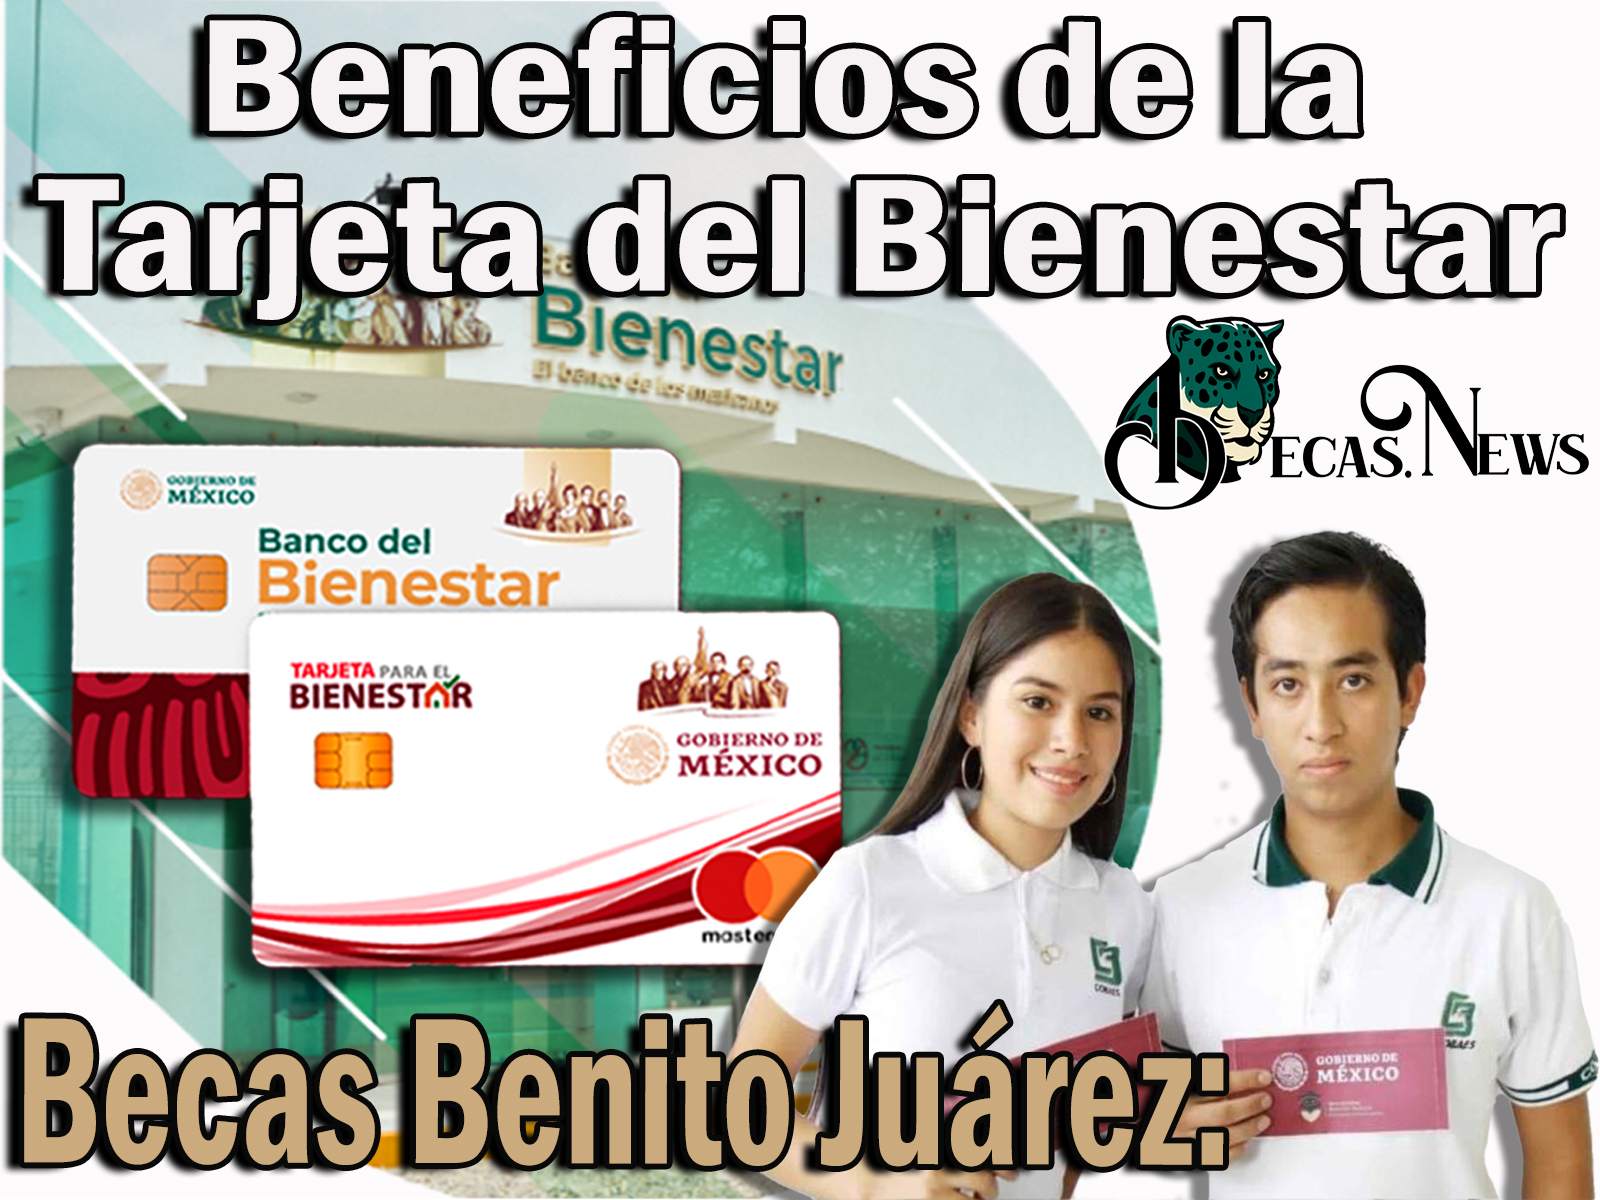 Becas Benito Juárez: Beneficios que tiene la Tarjeta del Bienestar